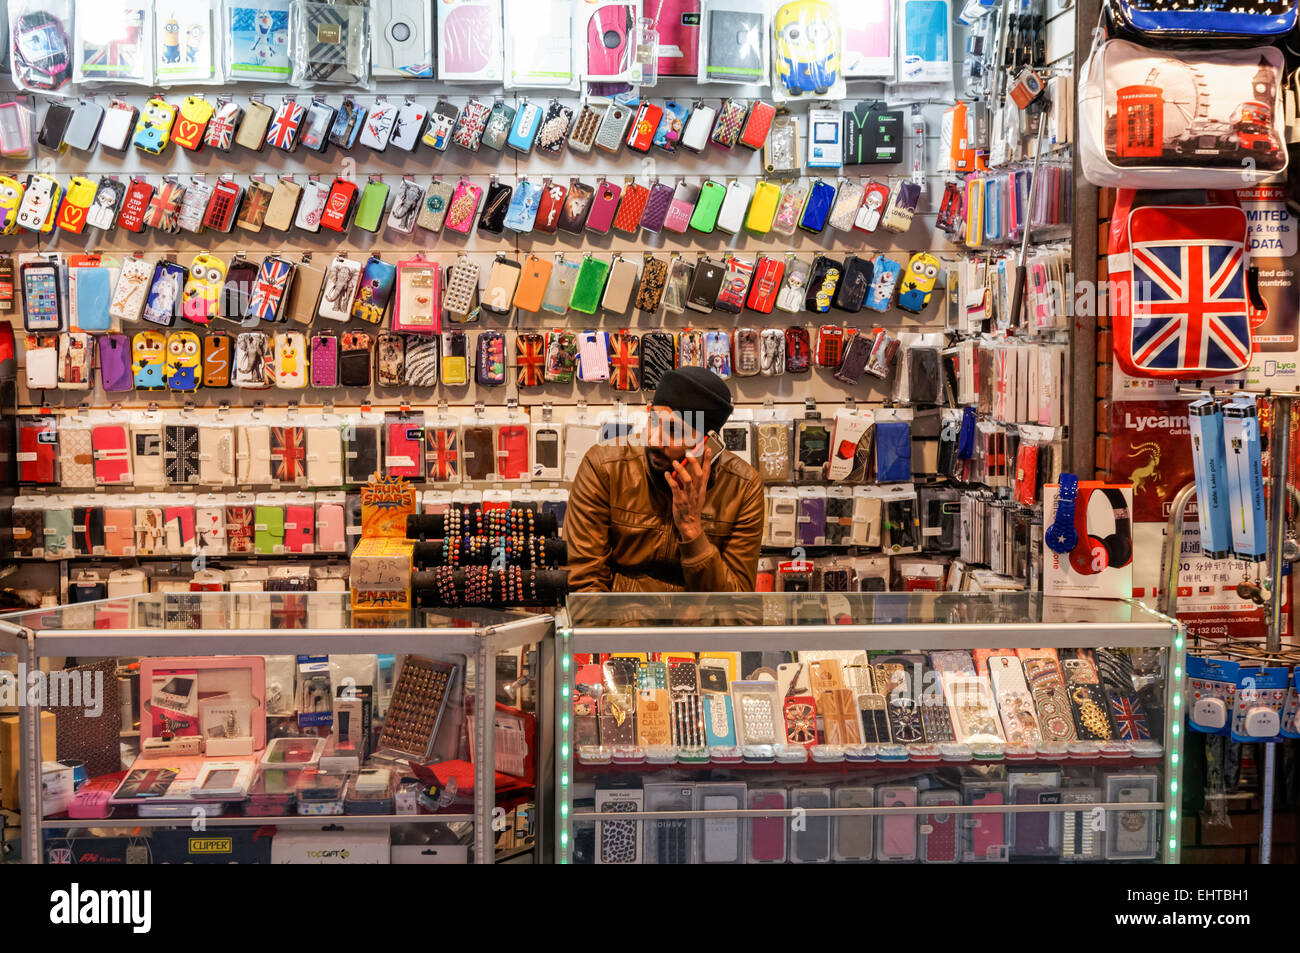 Man verkauft Smartphone-Hüllen und Zubehör, London England Vereinigtes Königreich Großbritannien Stockfoto